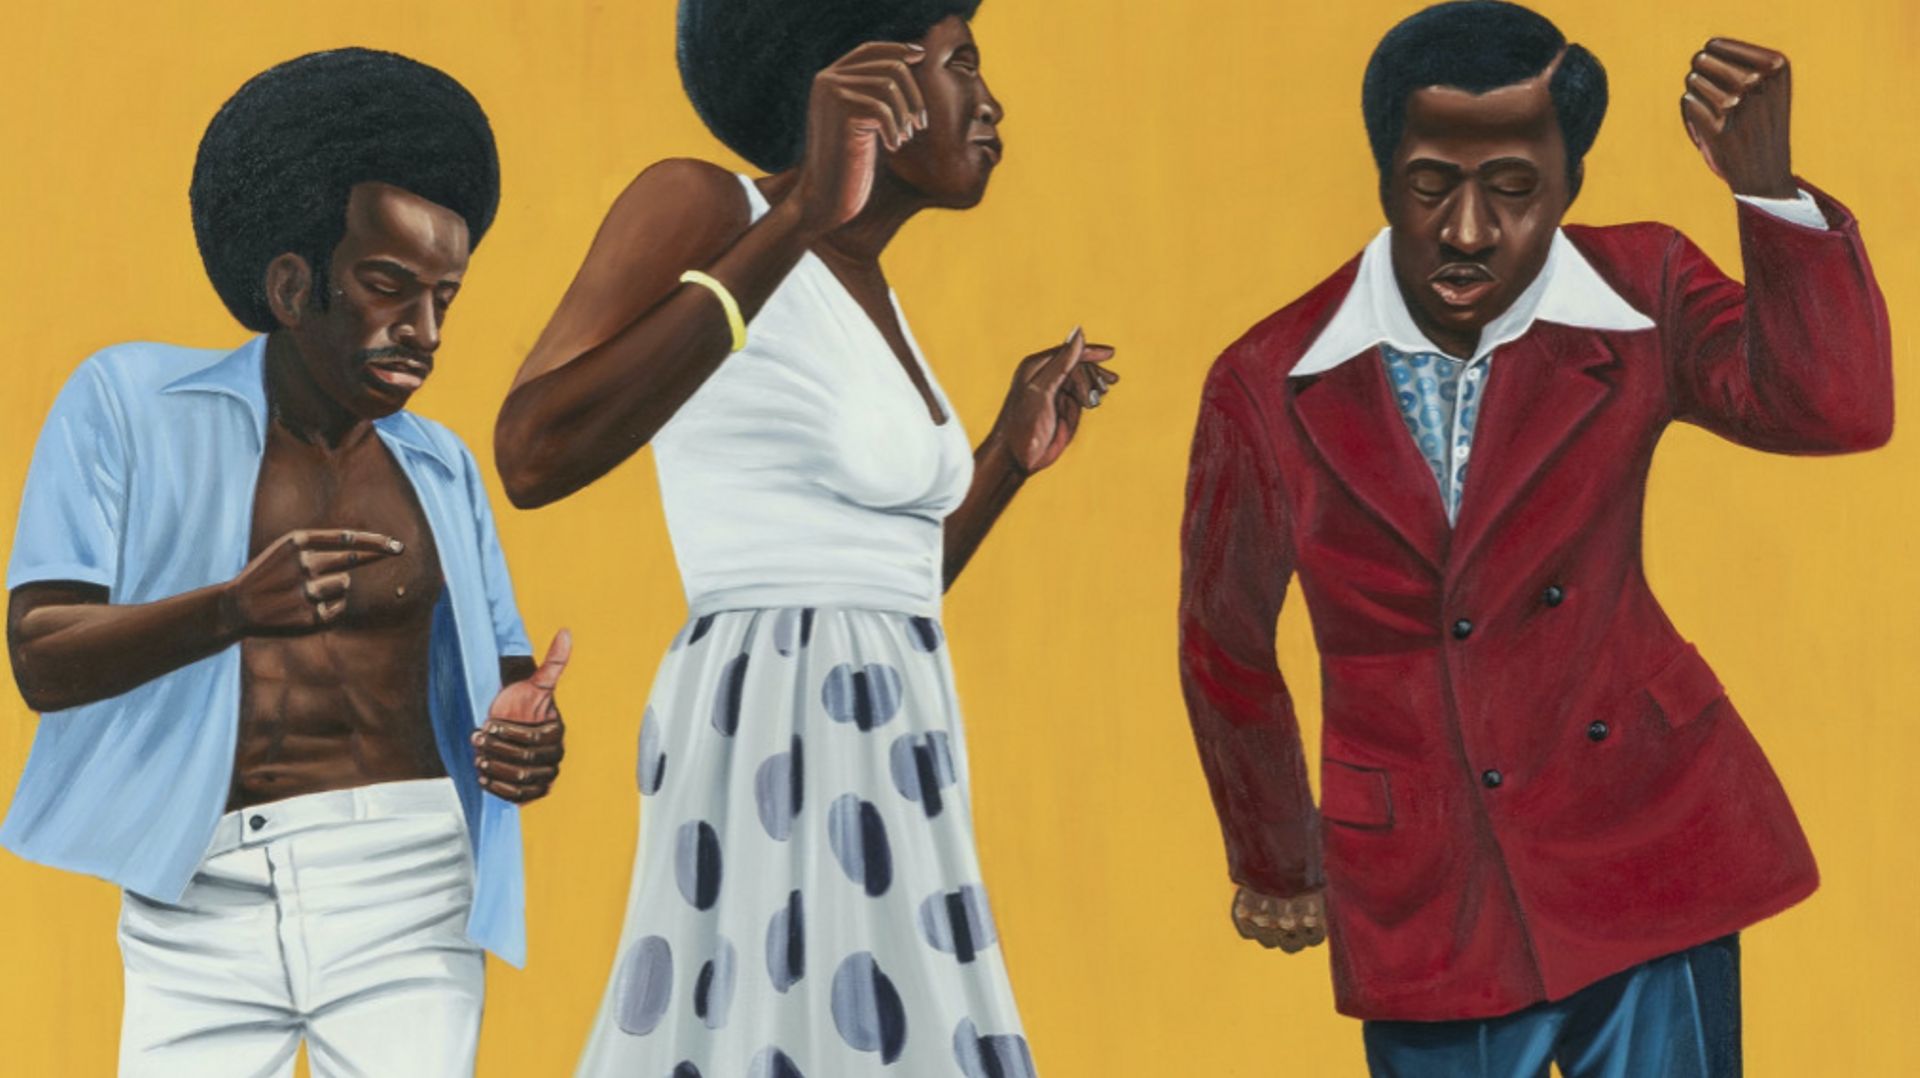 Les figures émergentes du marché de l’art contemporain africain exposées à Bruxelles